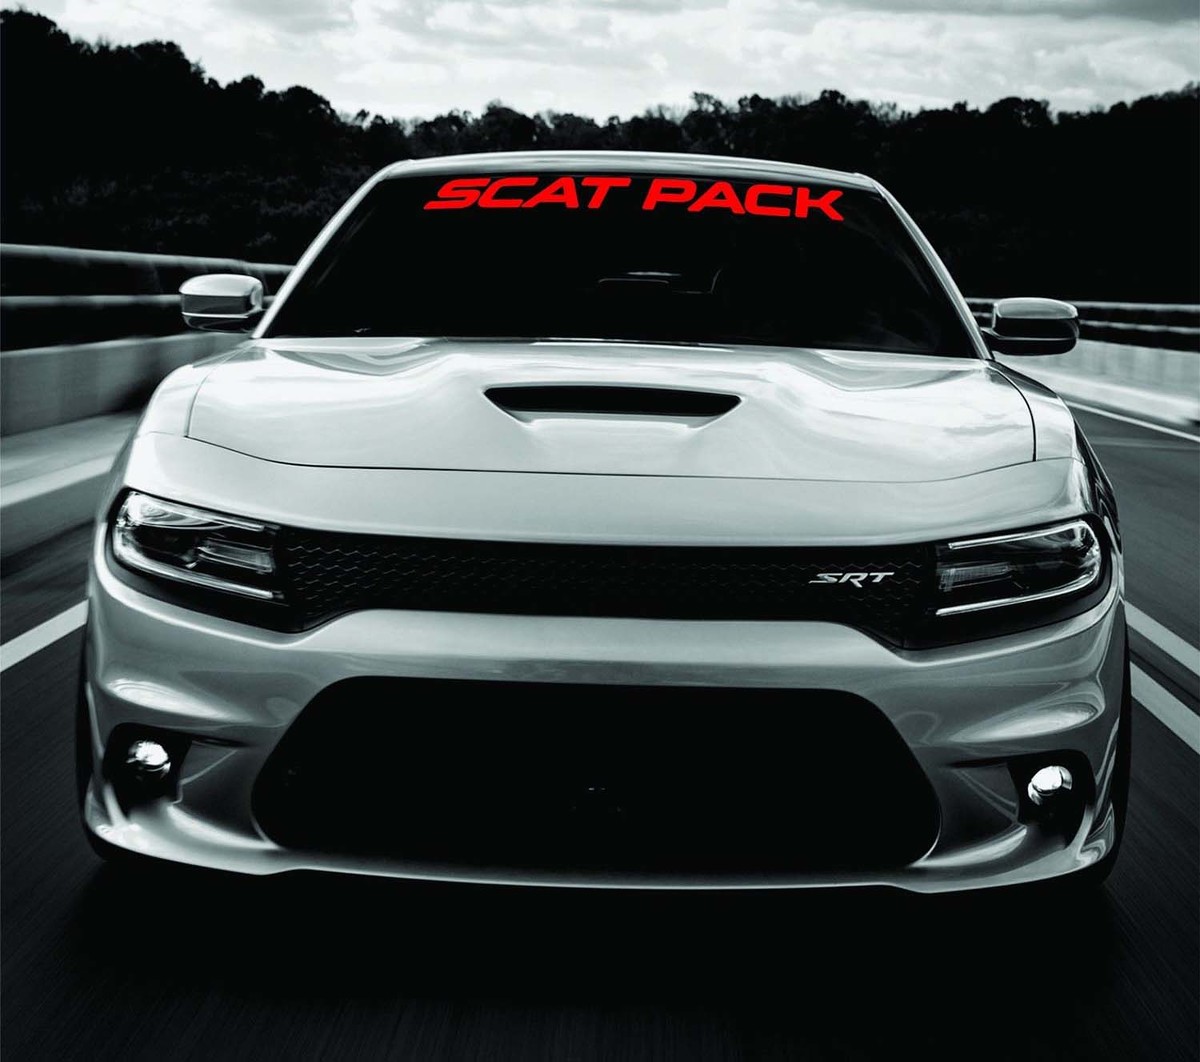 Dodge Charger SCAT PACK Windshield Banner Decal 2011-2018 SRT MOPAR 392 Scatpack